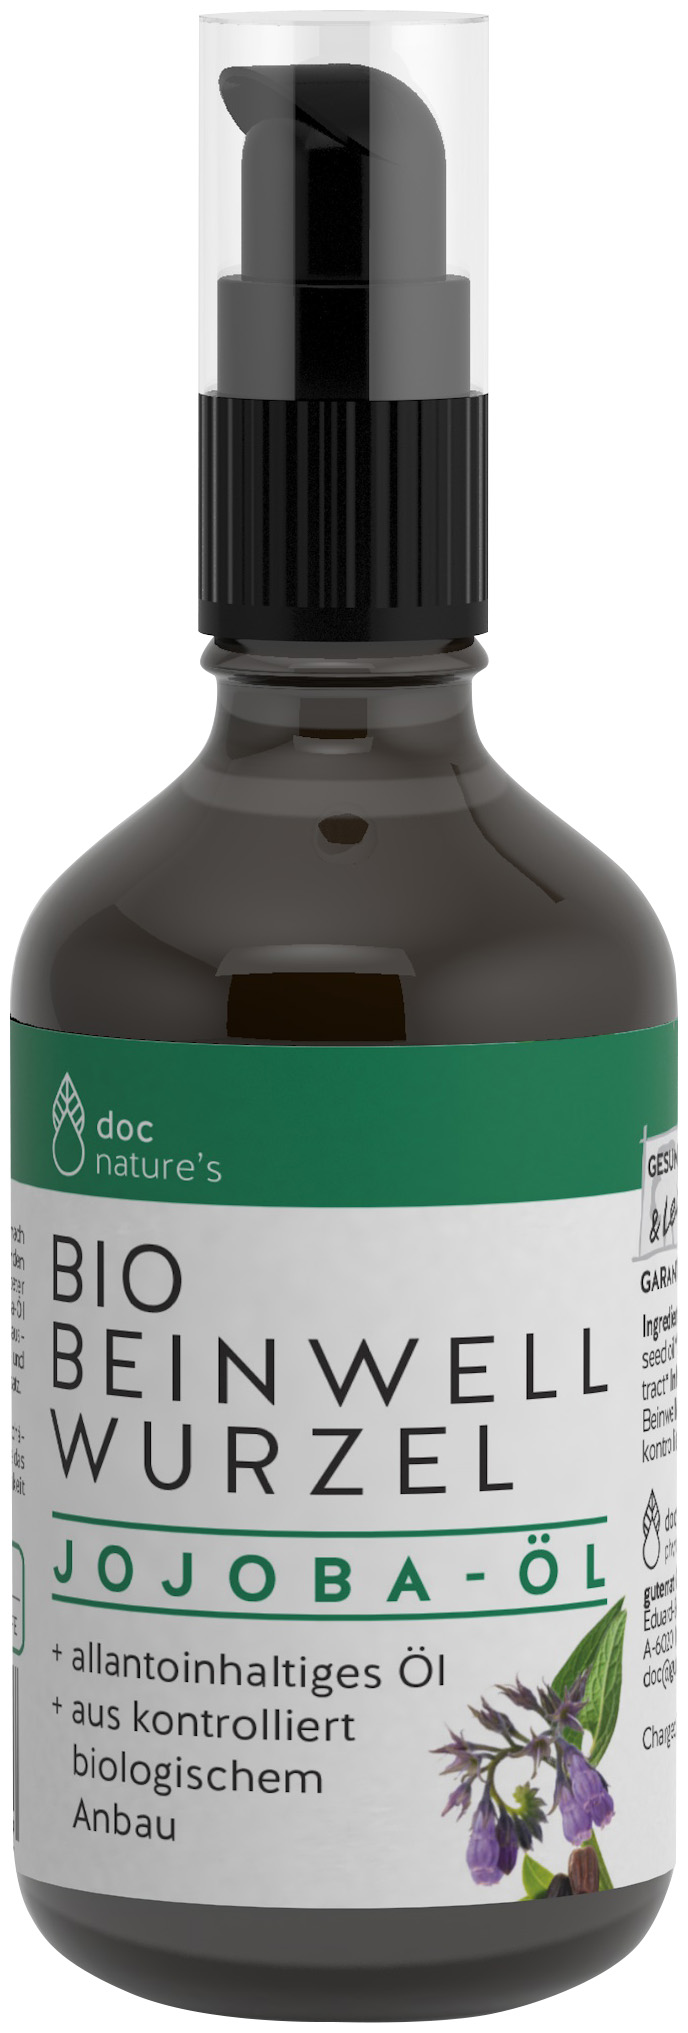 doc nature’s Bio BEINWELL WURZEL Jojoba-Öl